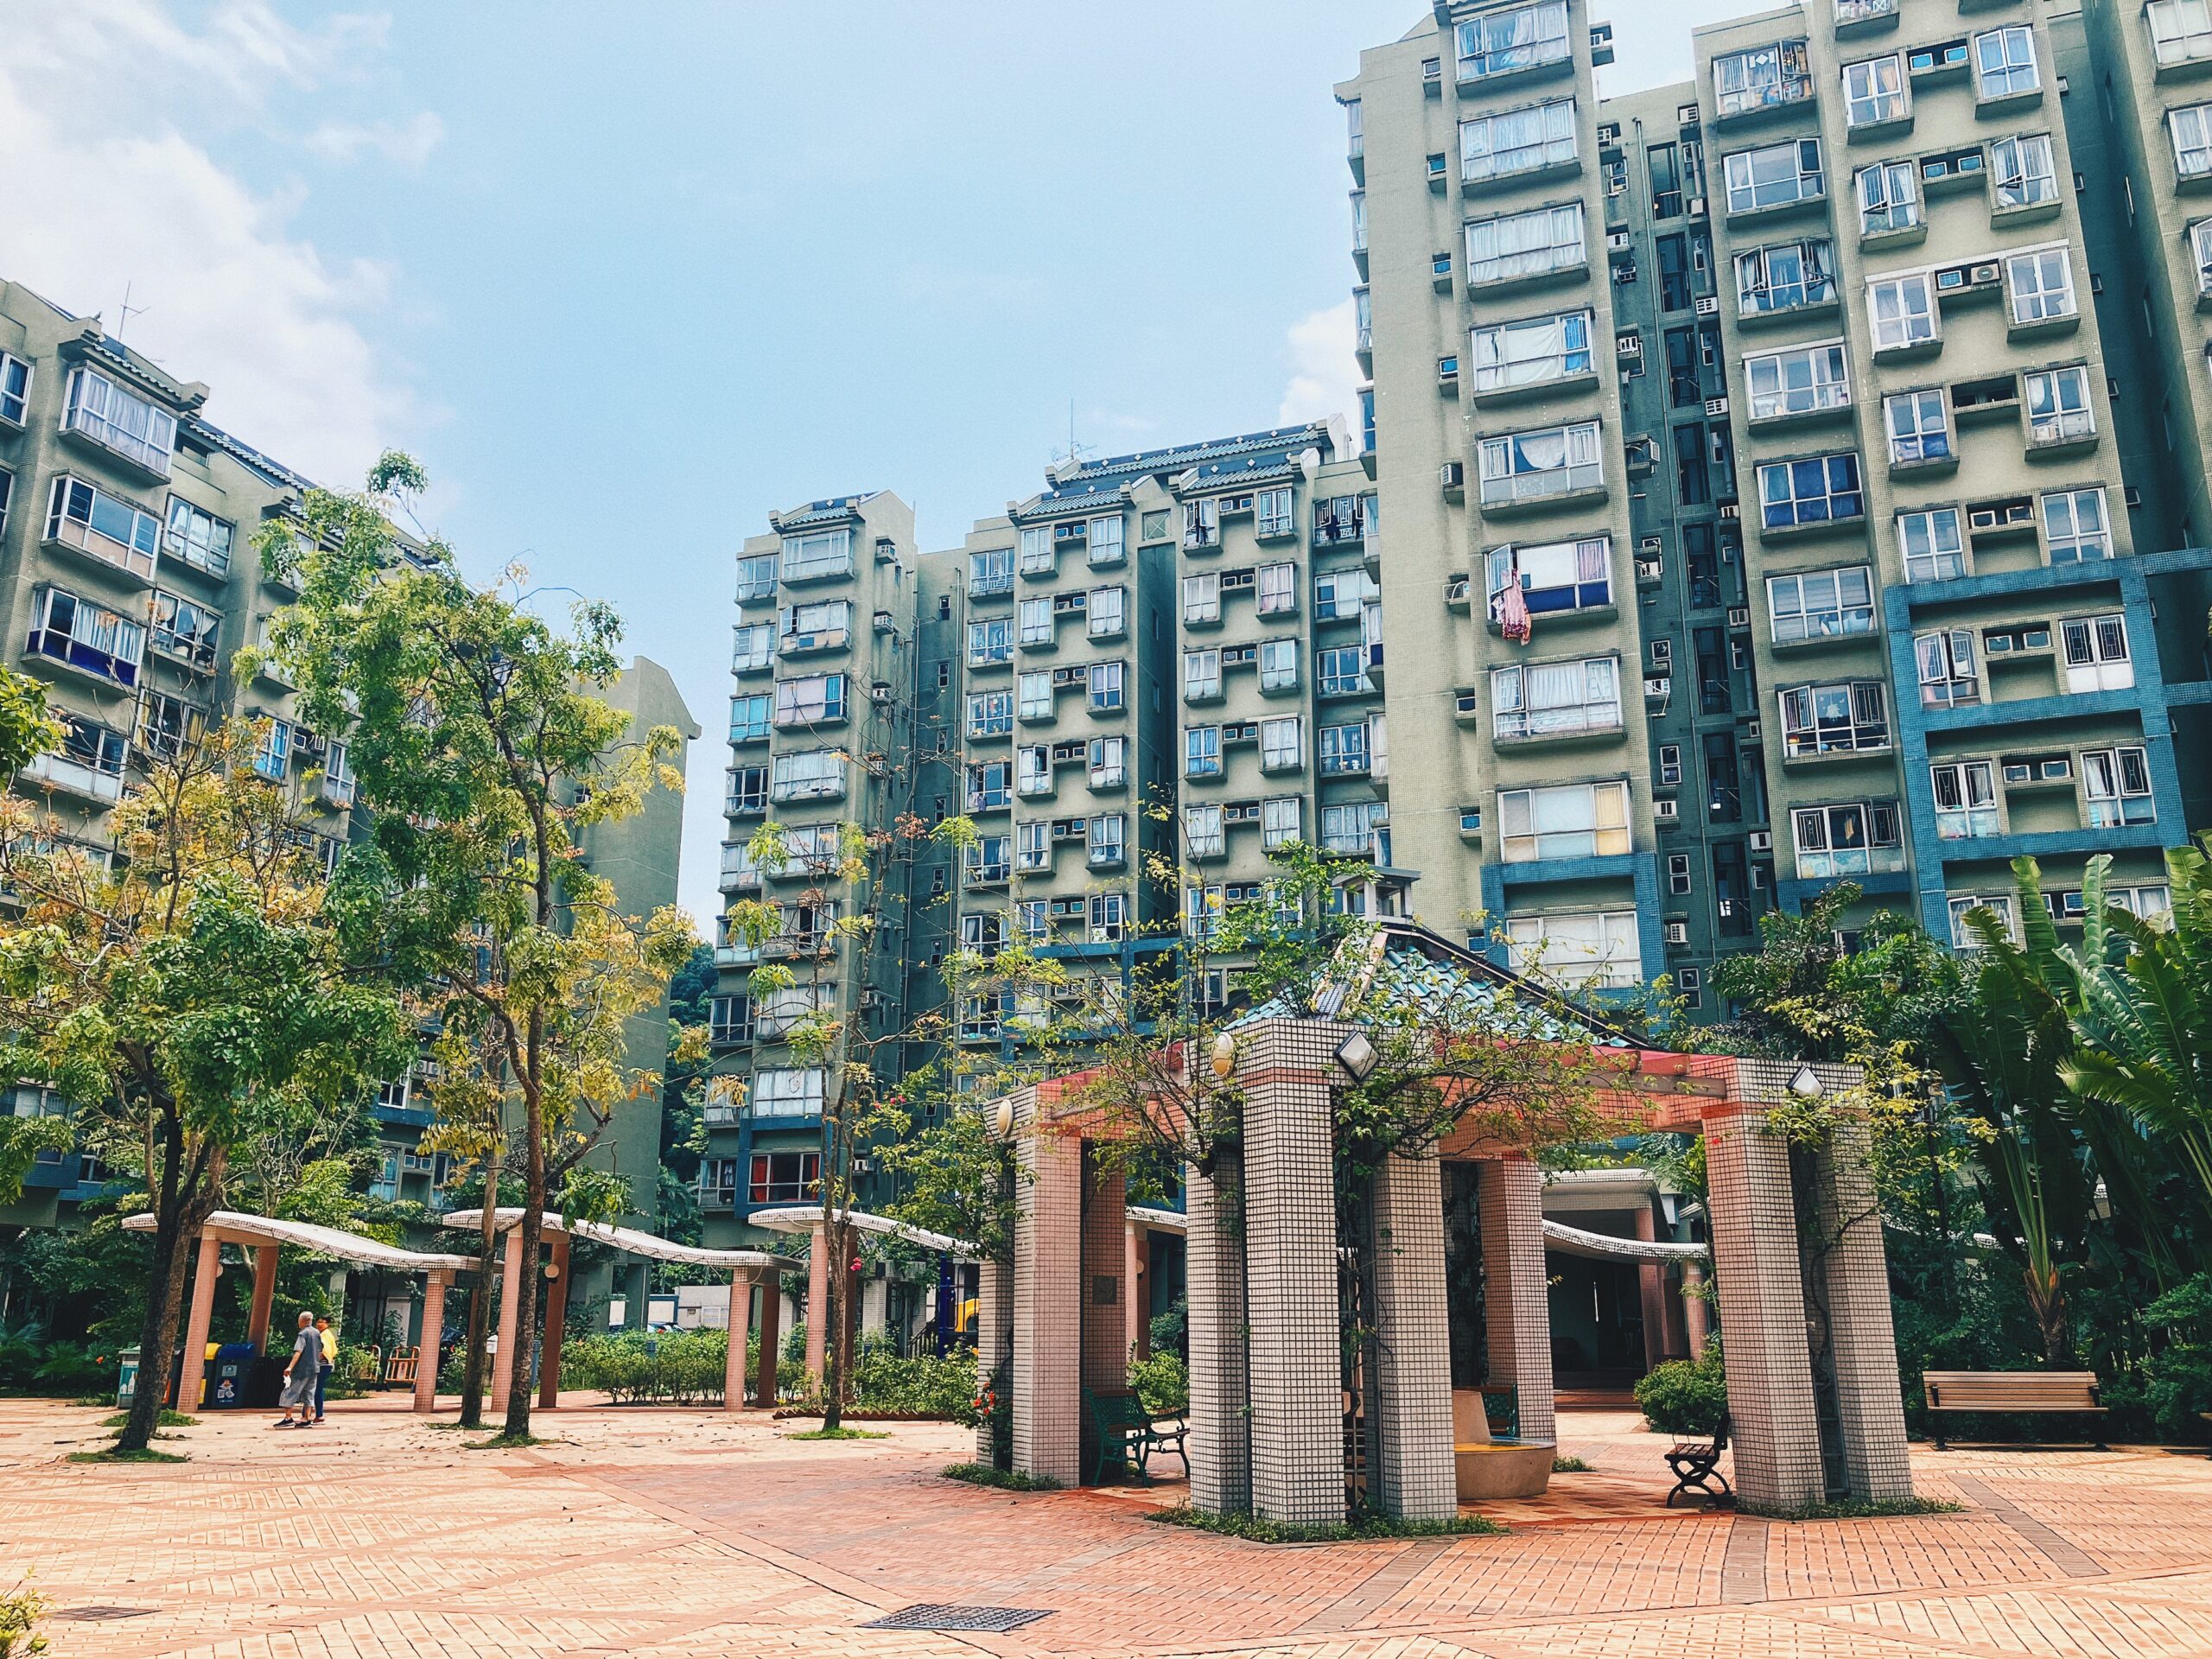 【香港公屋】西貢翠塘花園 房協第3個郊區公共屋邨 